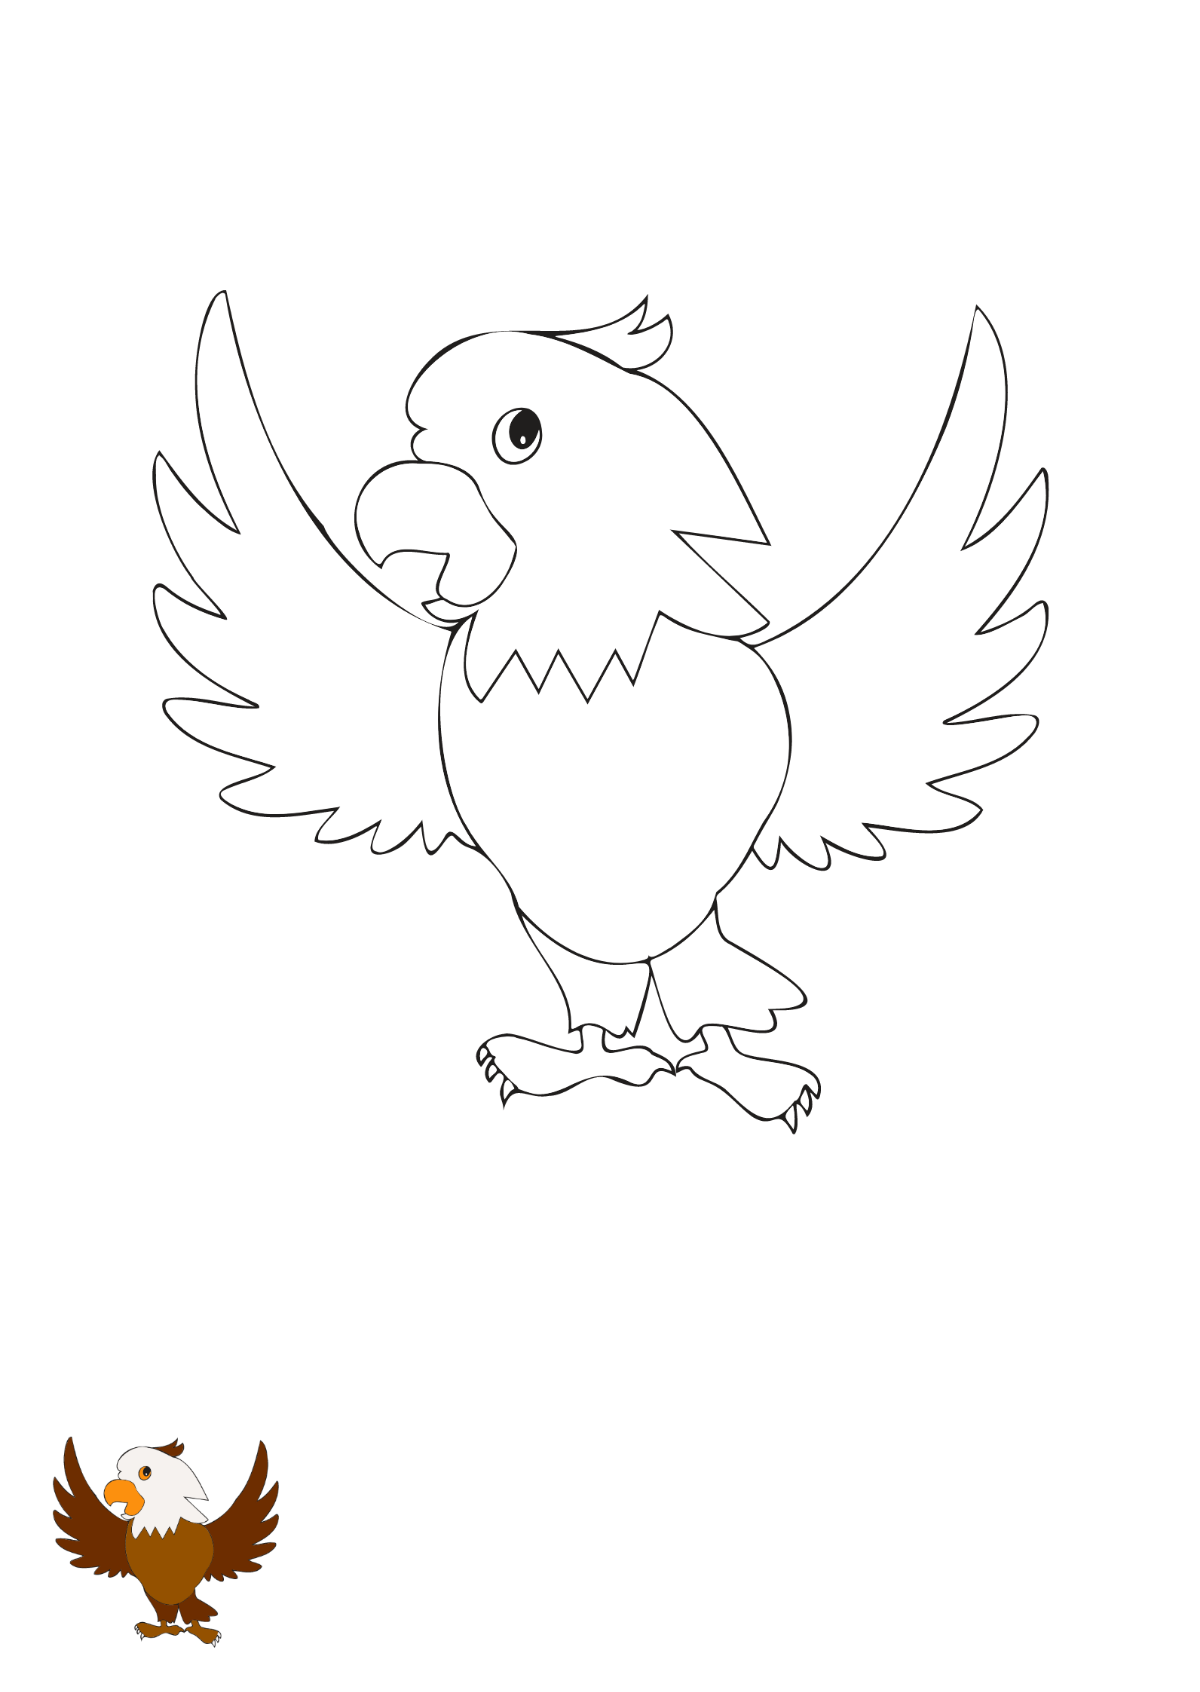 Cartoon Eagle coloring page